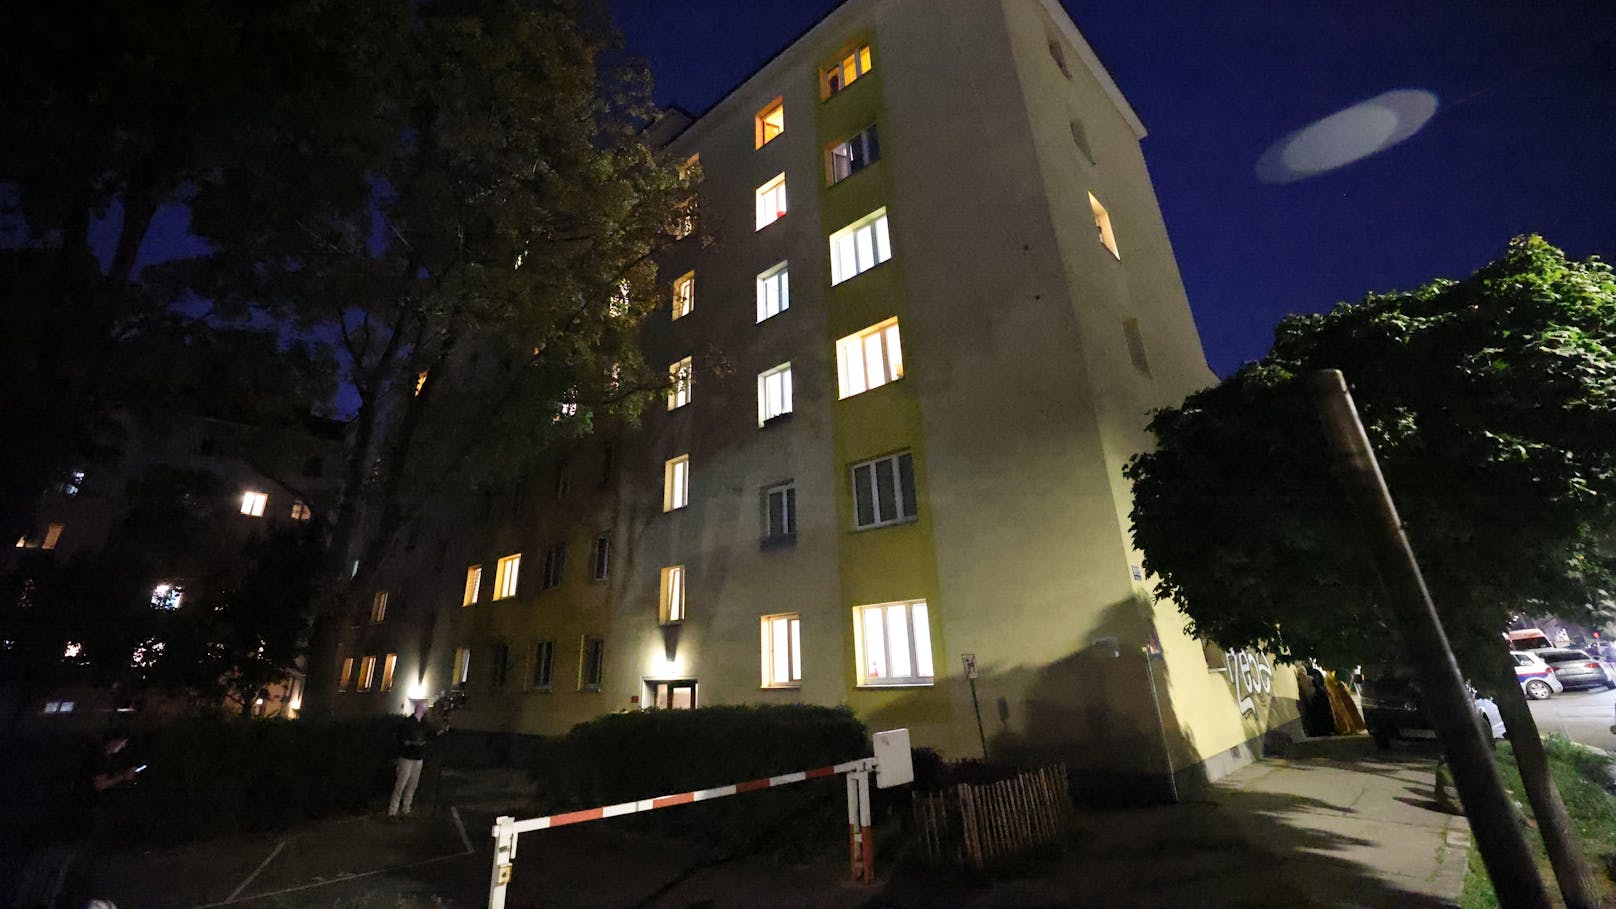 Mordalarm in Wien-Favoriten: In einer Gemeindebauwohnung wurden zwei tote Frauen entdeckt.